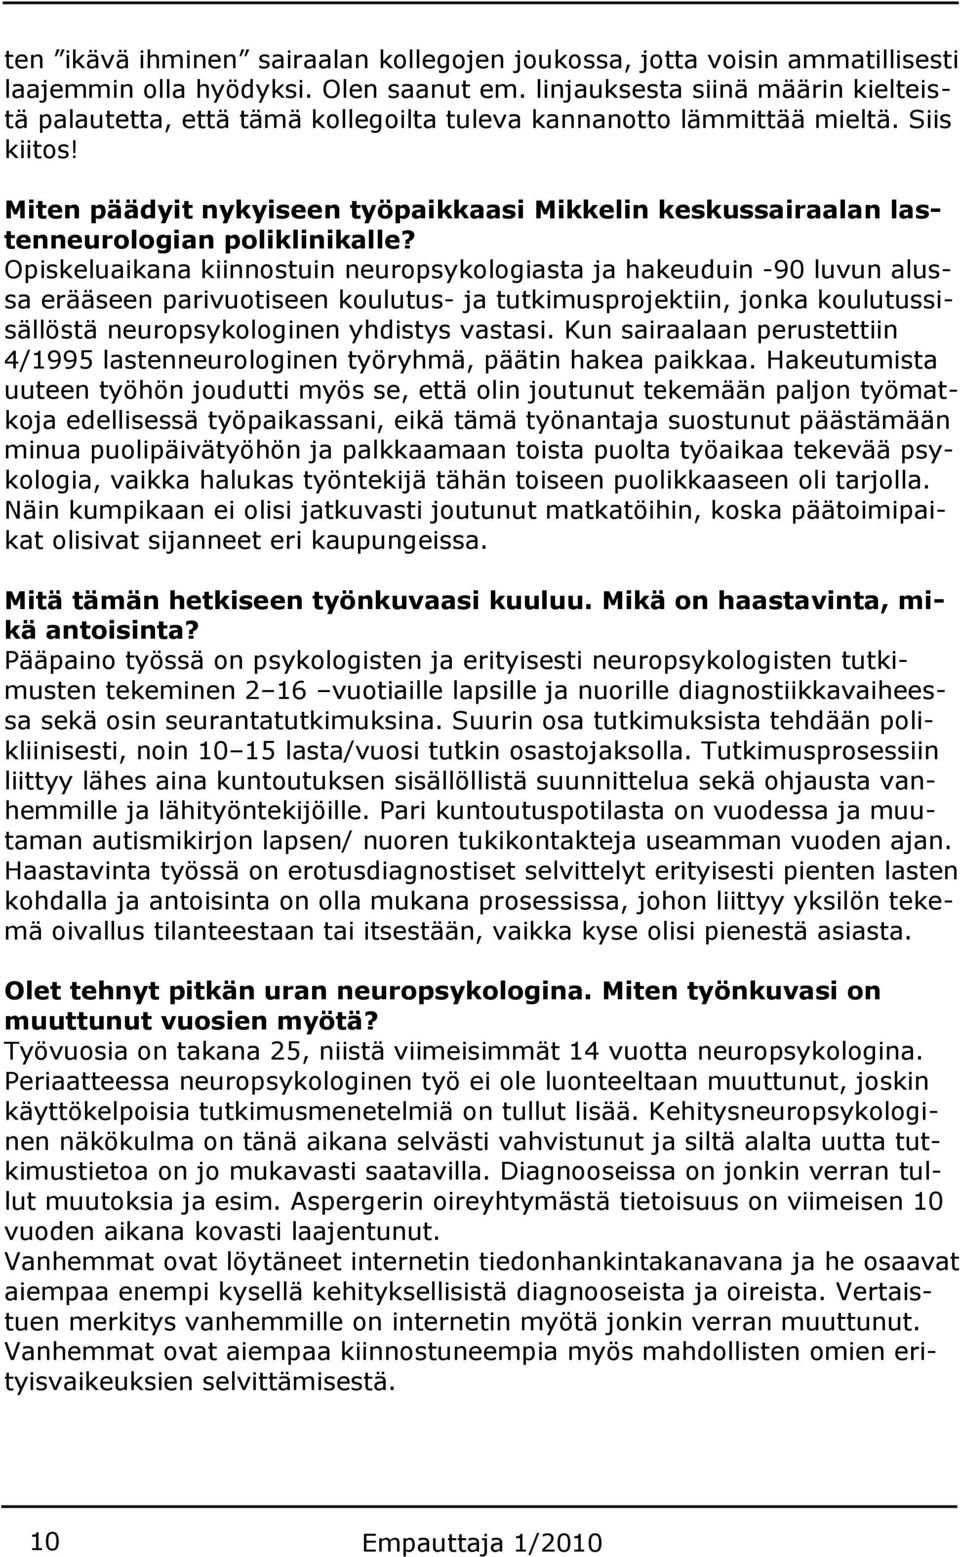 Miten päädyit nykyiseen työpaikkaasi Mikkelin keskussairaalan lastenneurologian poliklinikalle?